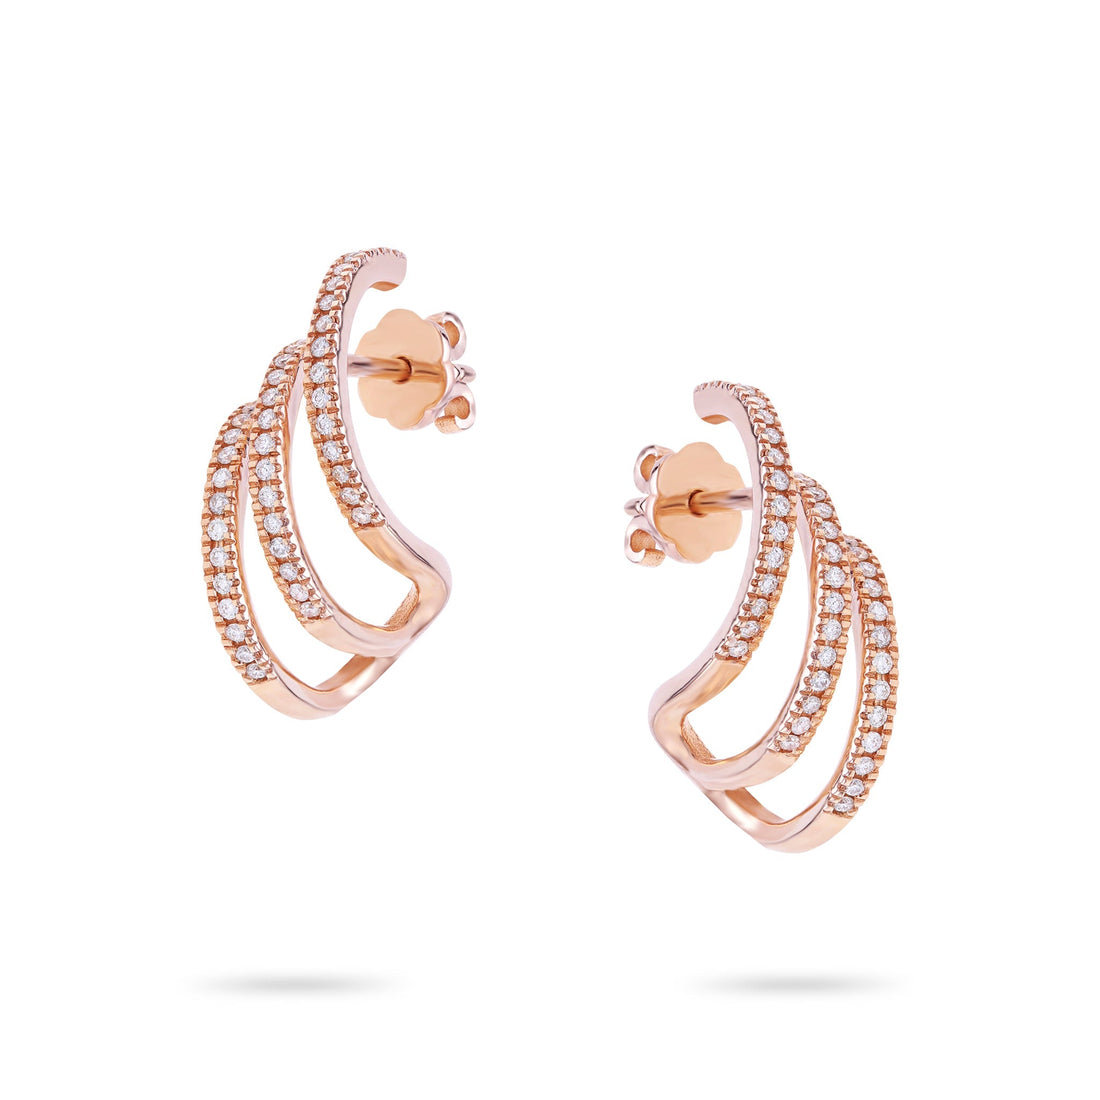 Jewelry Diamond Ear Cuffs | Earrings | 0.35 Cts. | 14K Gold - Rose / Pair / Diamonds - earring Zengoda Shop